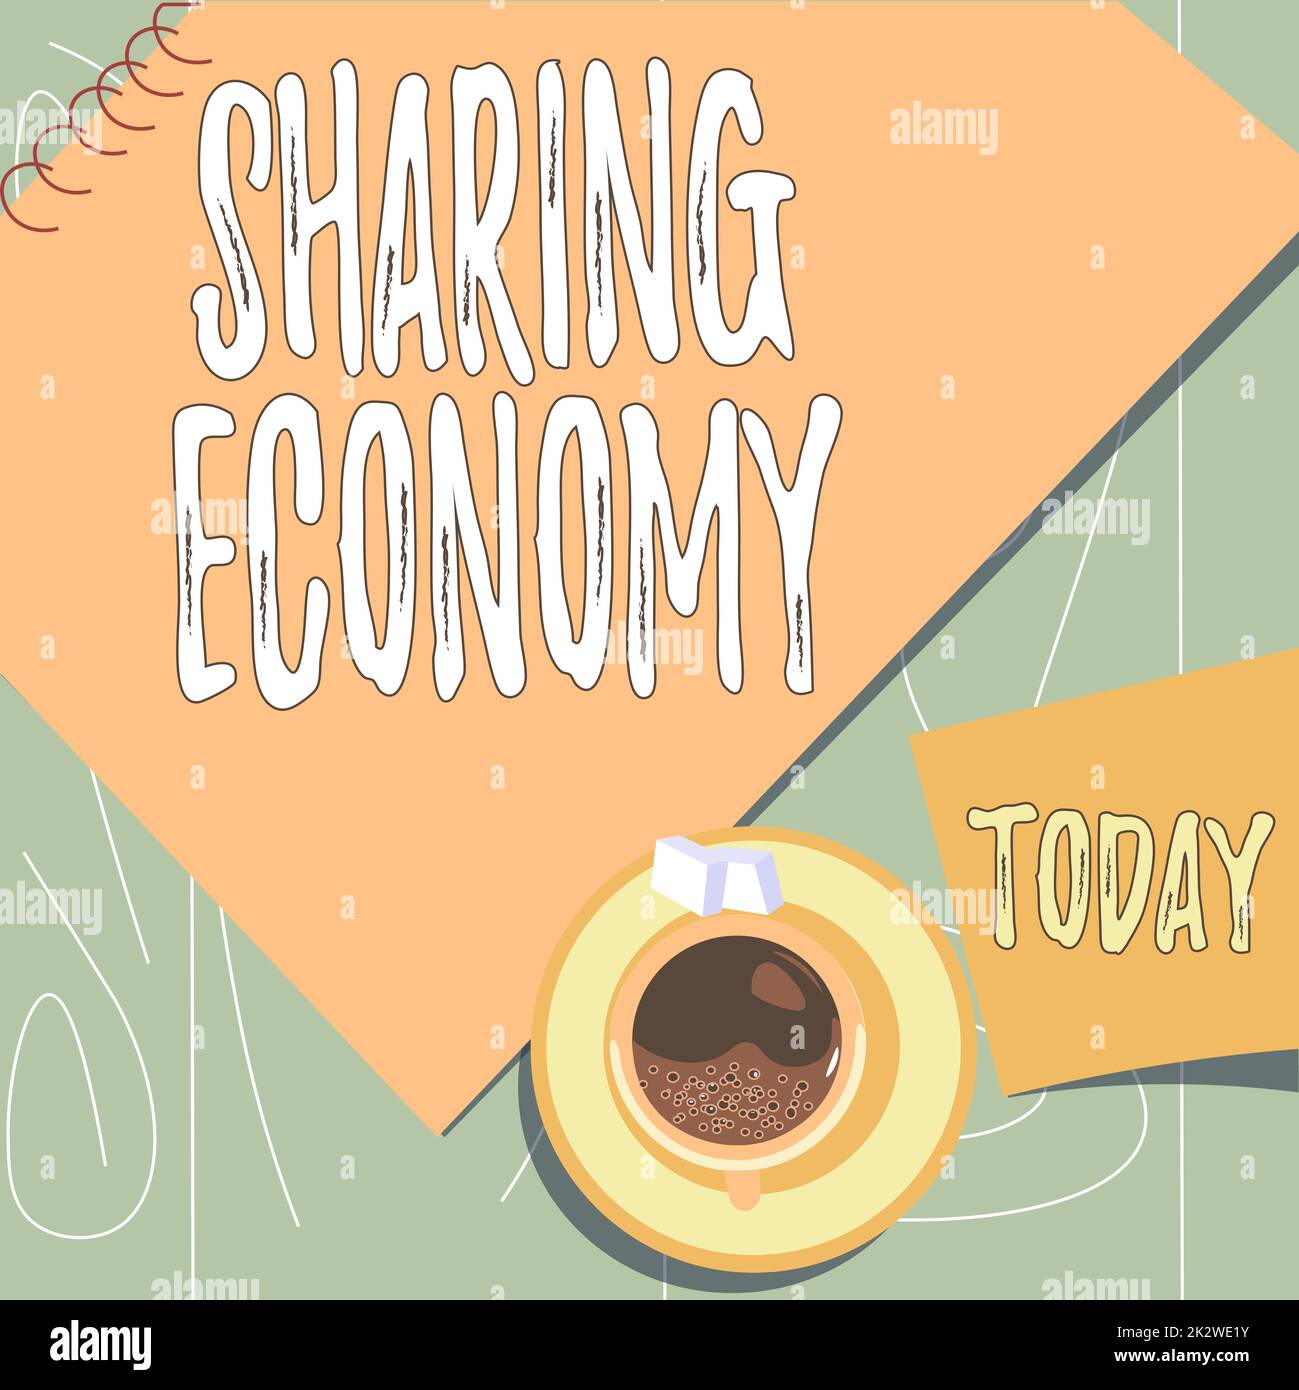 Schild mit der Aufschrift „Sharing Economy“. Business-Idee-Wirtschaftsmodell, das auf dem Zugang zu Waren aus der Tasse auf dem Schreibtisch mit einem Notizbuch basiert, das einen entspannten Arbeitsplatz darstellt. Stockfoto